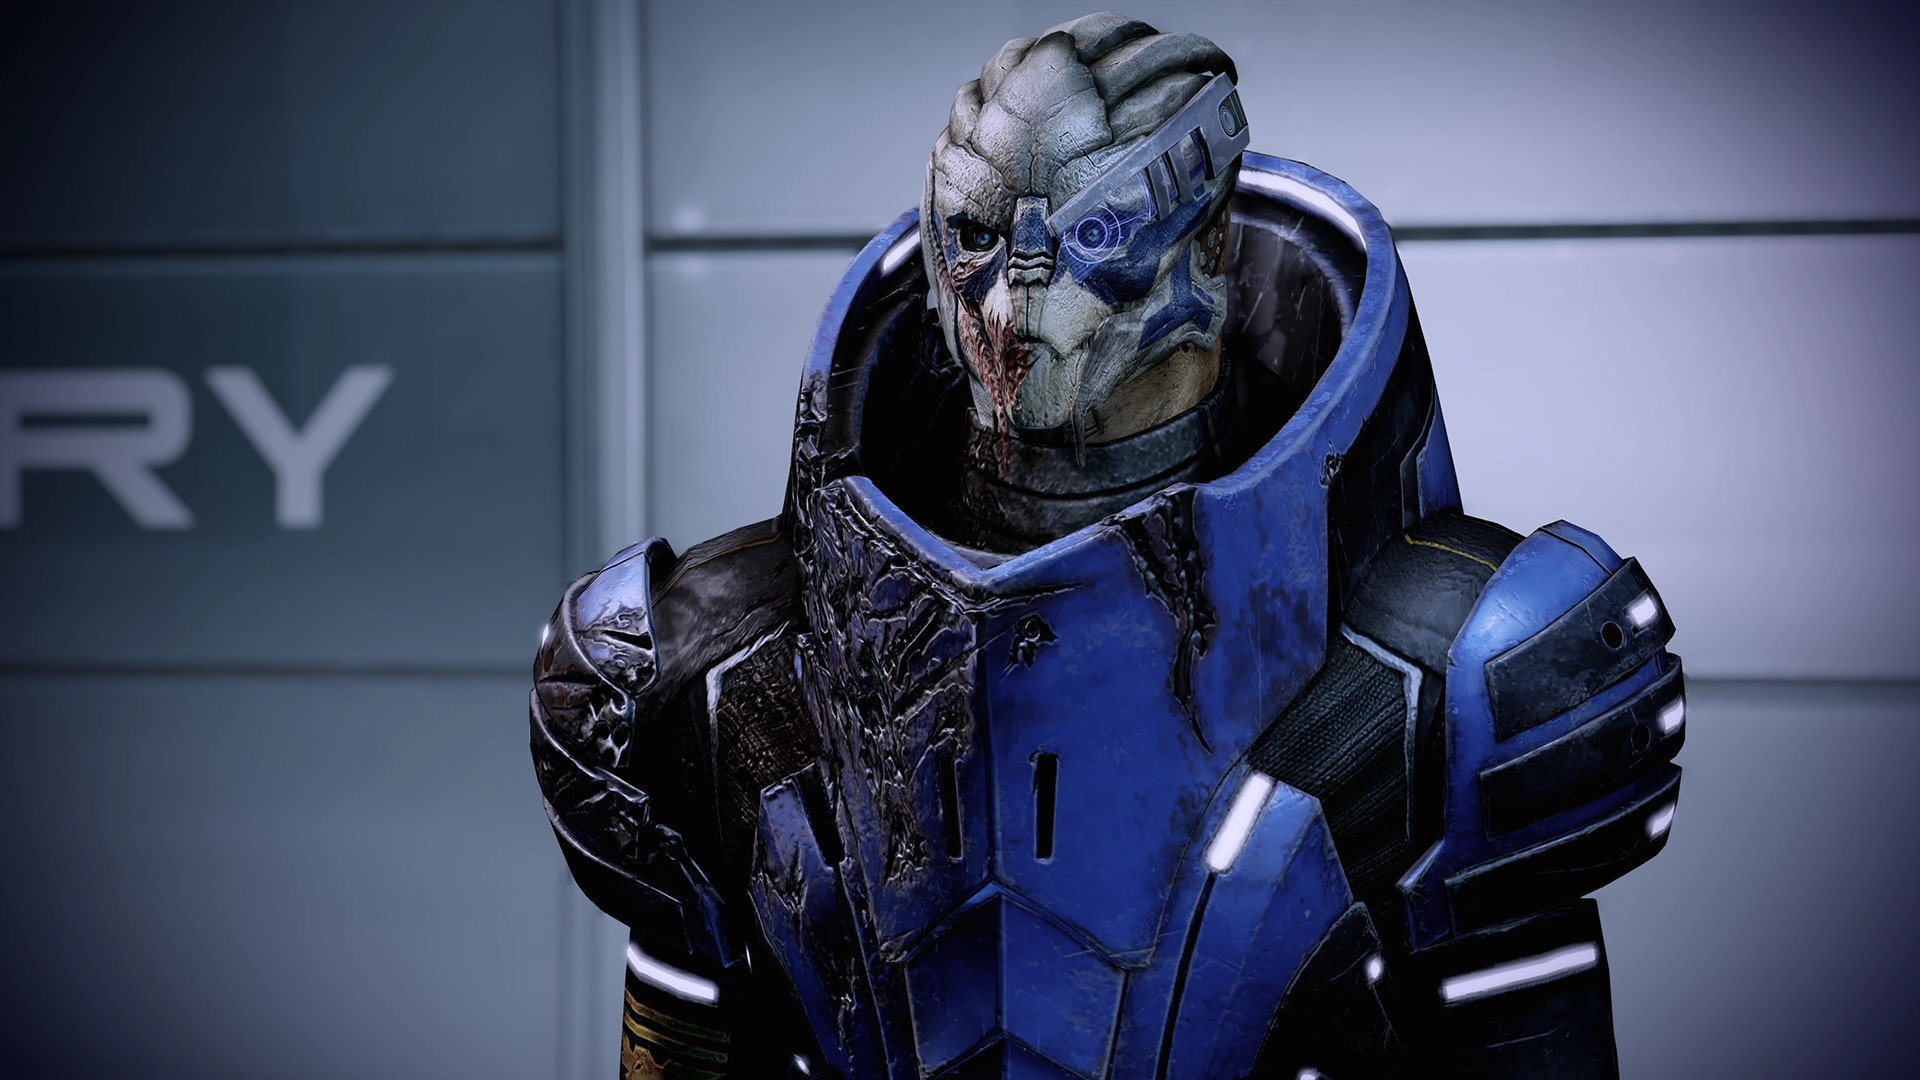 Mass Effect™ издание Legendary for mac download free